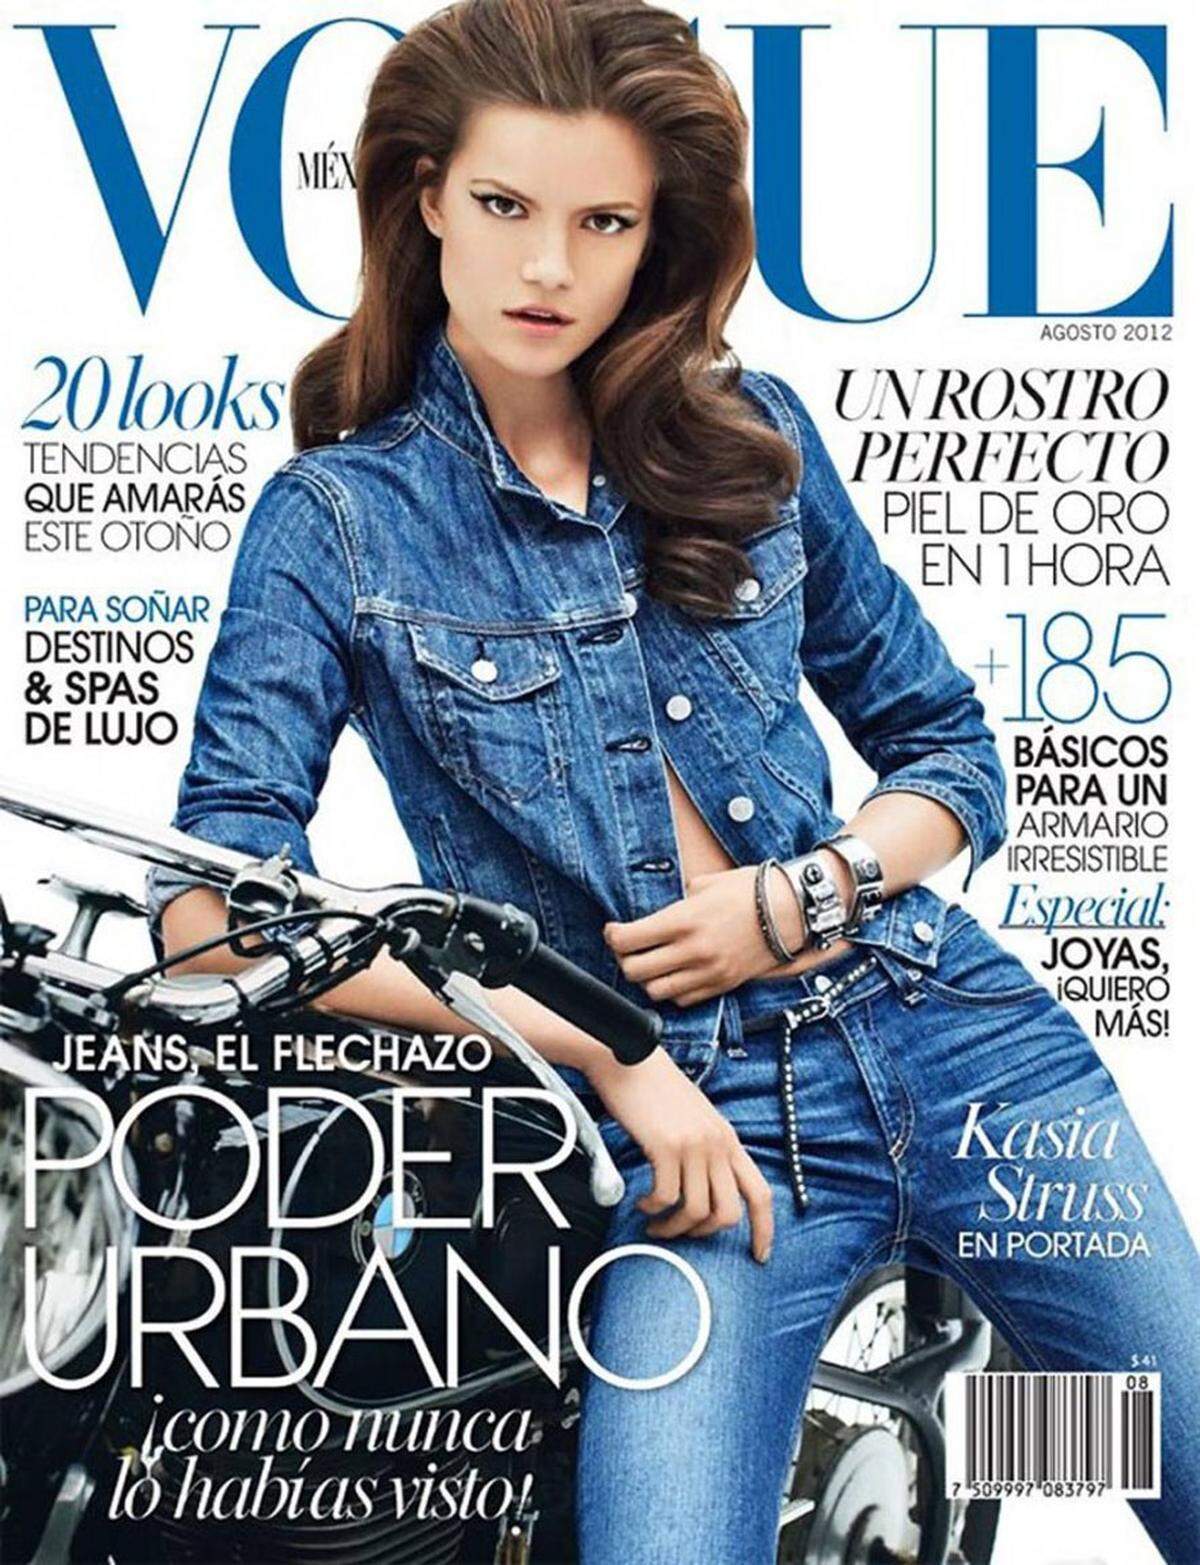 Schon 2012 feierte der Look auf der mexikanischen Vogue sein Comeback.